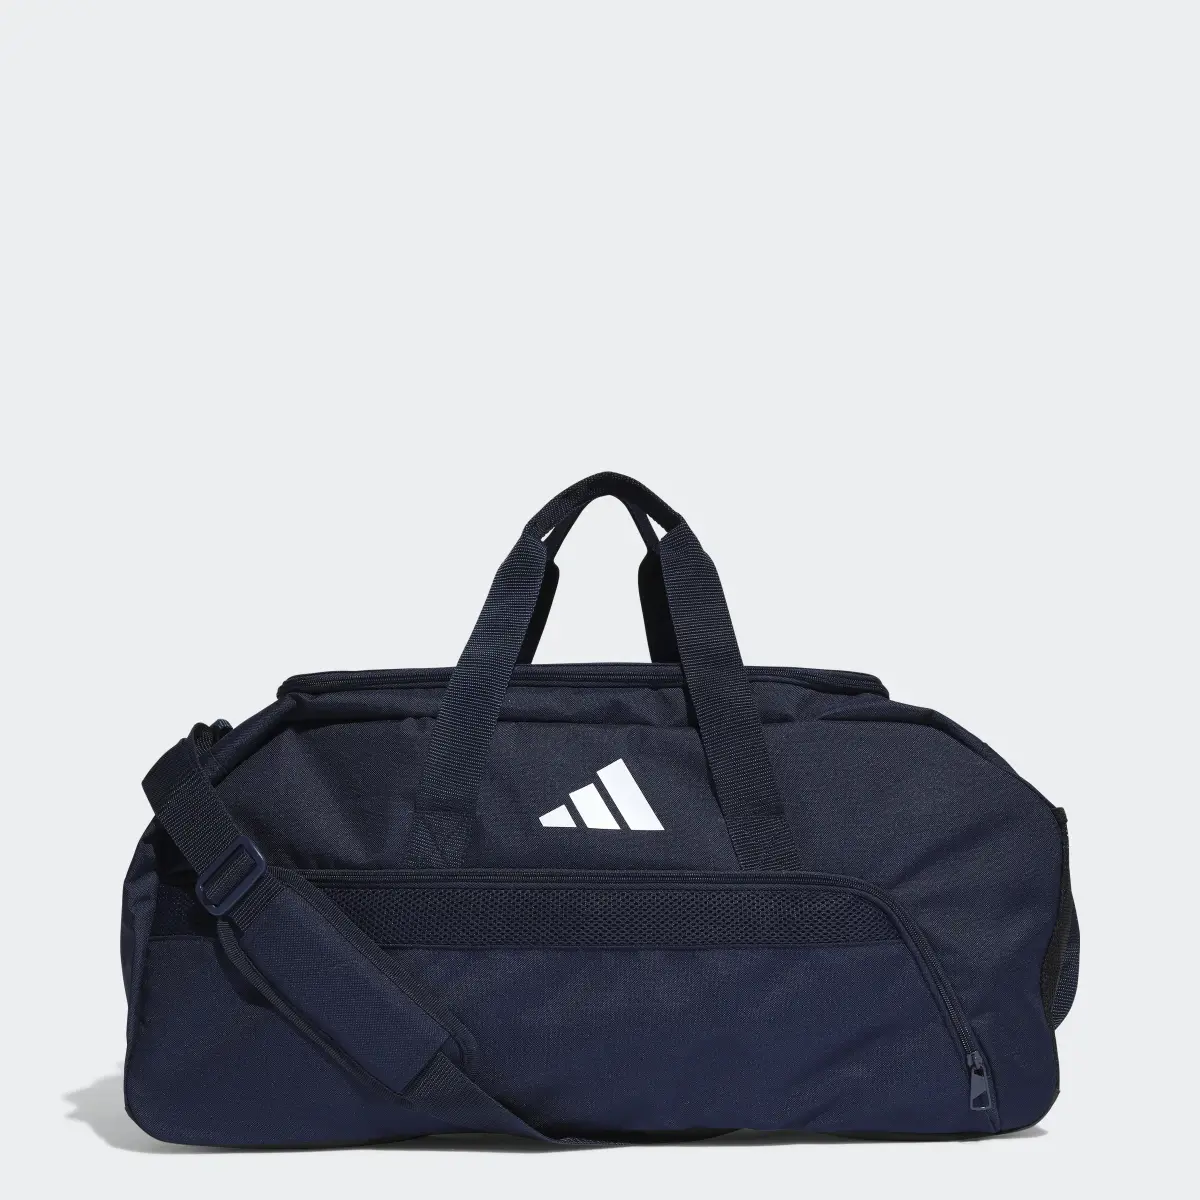 Adidas Tiro League Duffel Bag Medium. 1